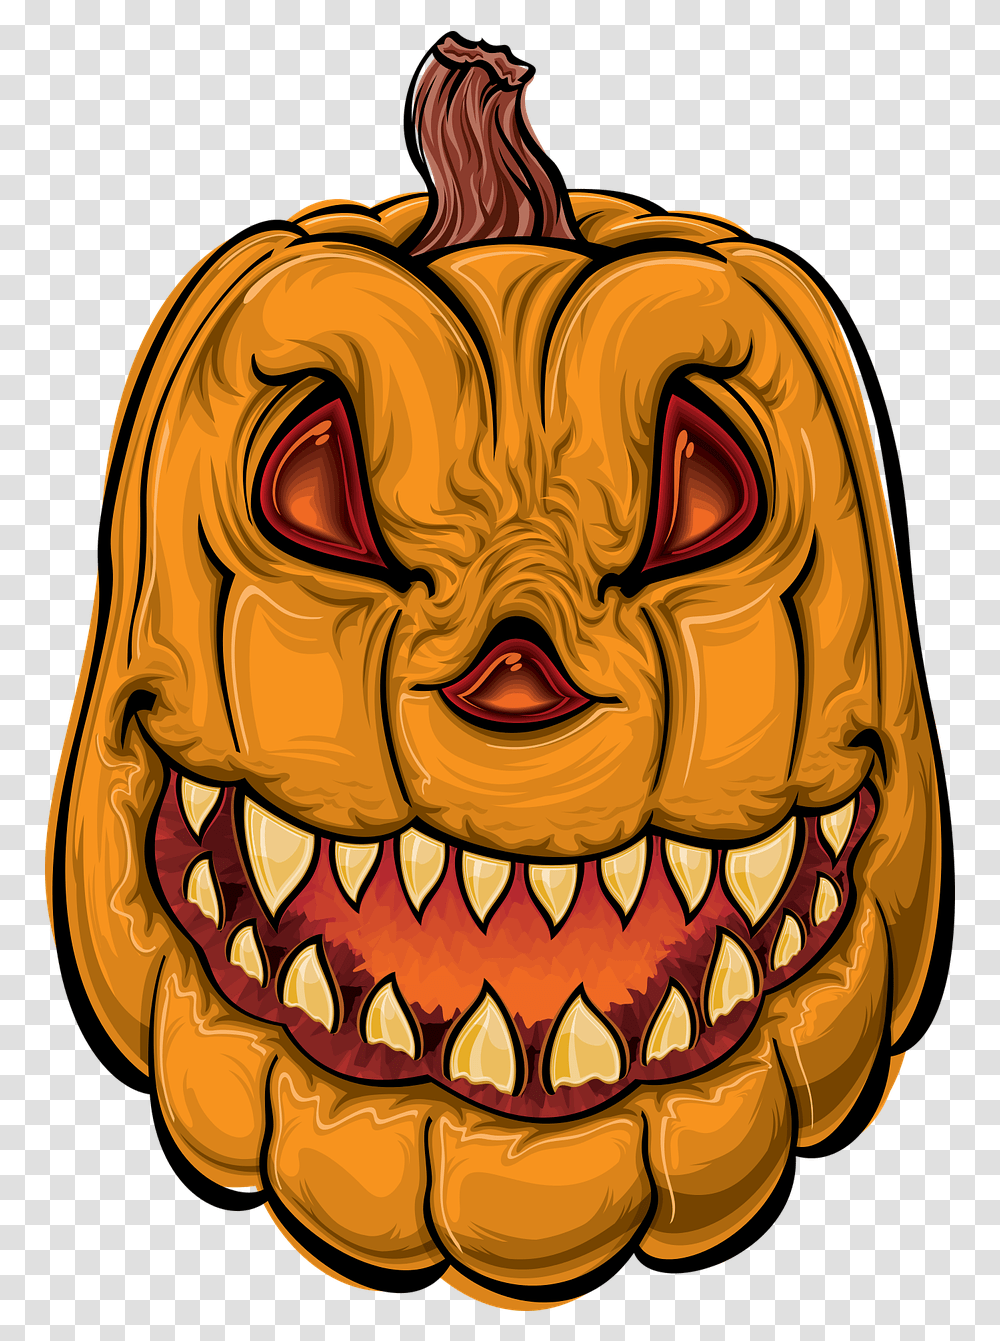 Pumpkin Halloween Cartoon Dibujos De Calabazas Fciles, Teeth, Mouth, Lip, Jaw Transparent Png